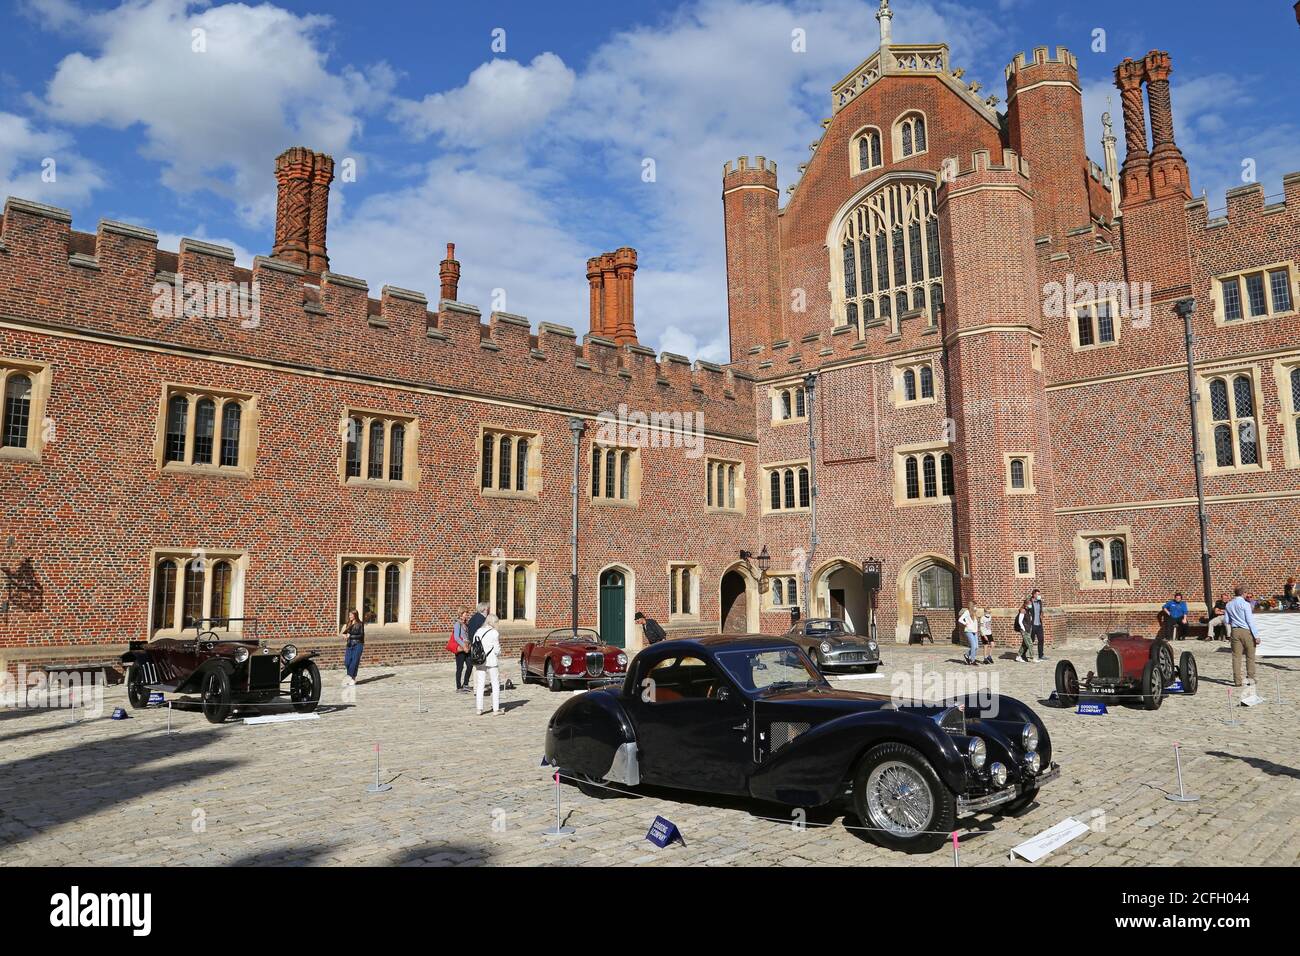 Affichage des lots de vente aux enchères dans la base court, Gooding Classic car Auction, 5 septembre 2020. Hampton court Palace, Londres, Royaume-Uni, Europe Banque D'Images